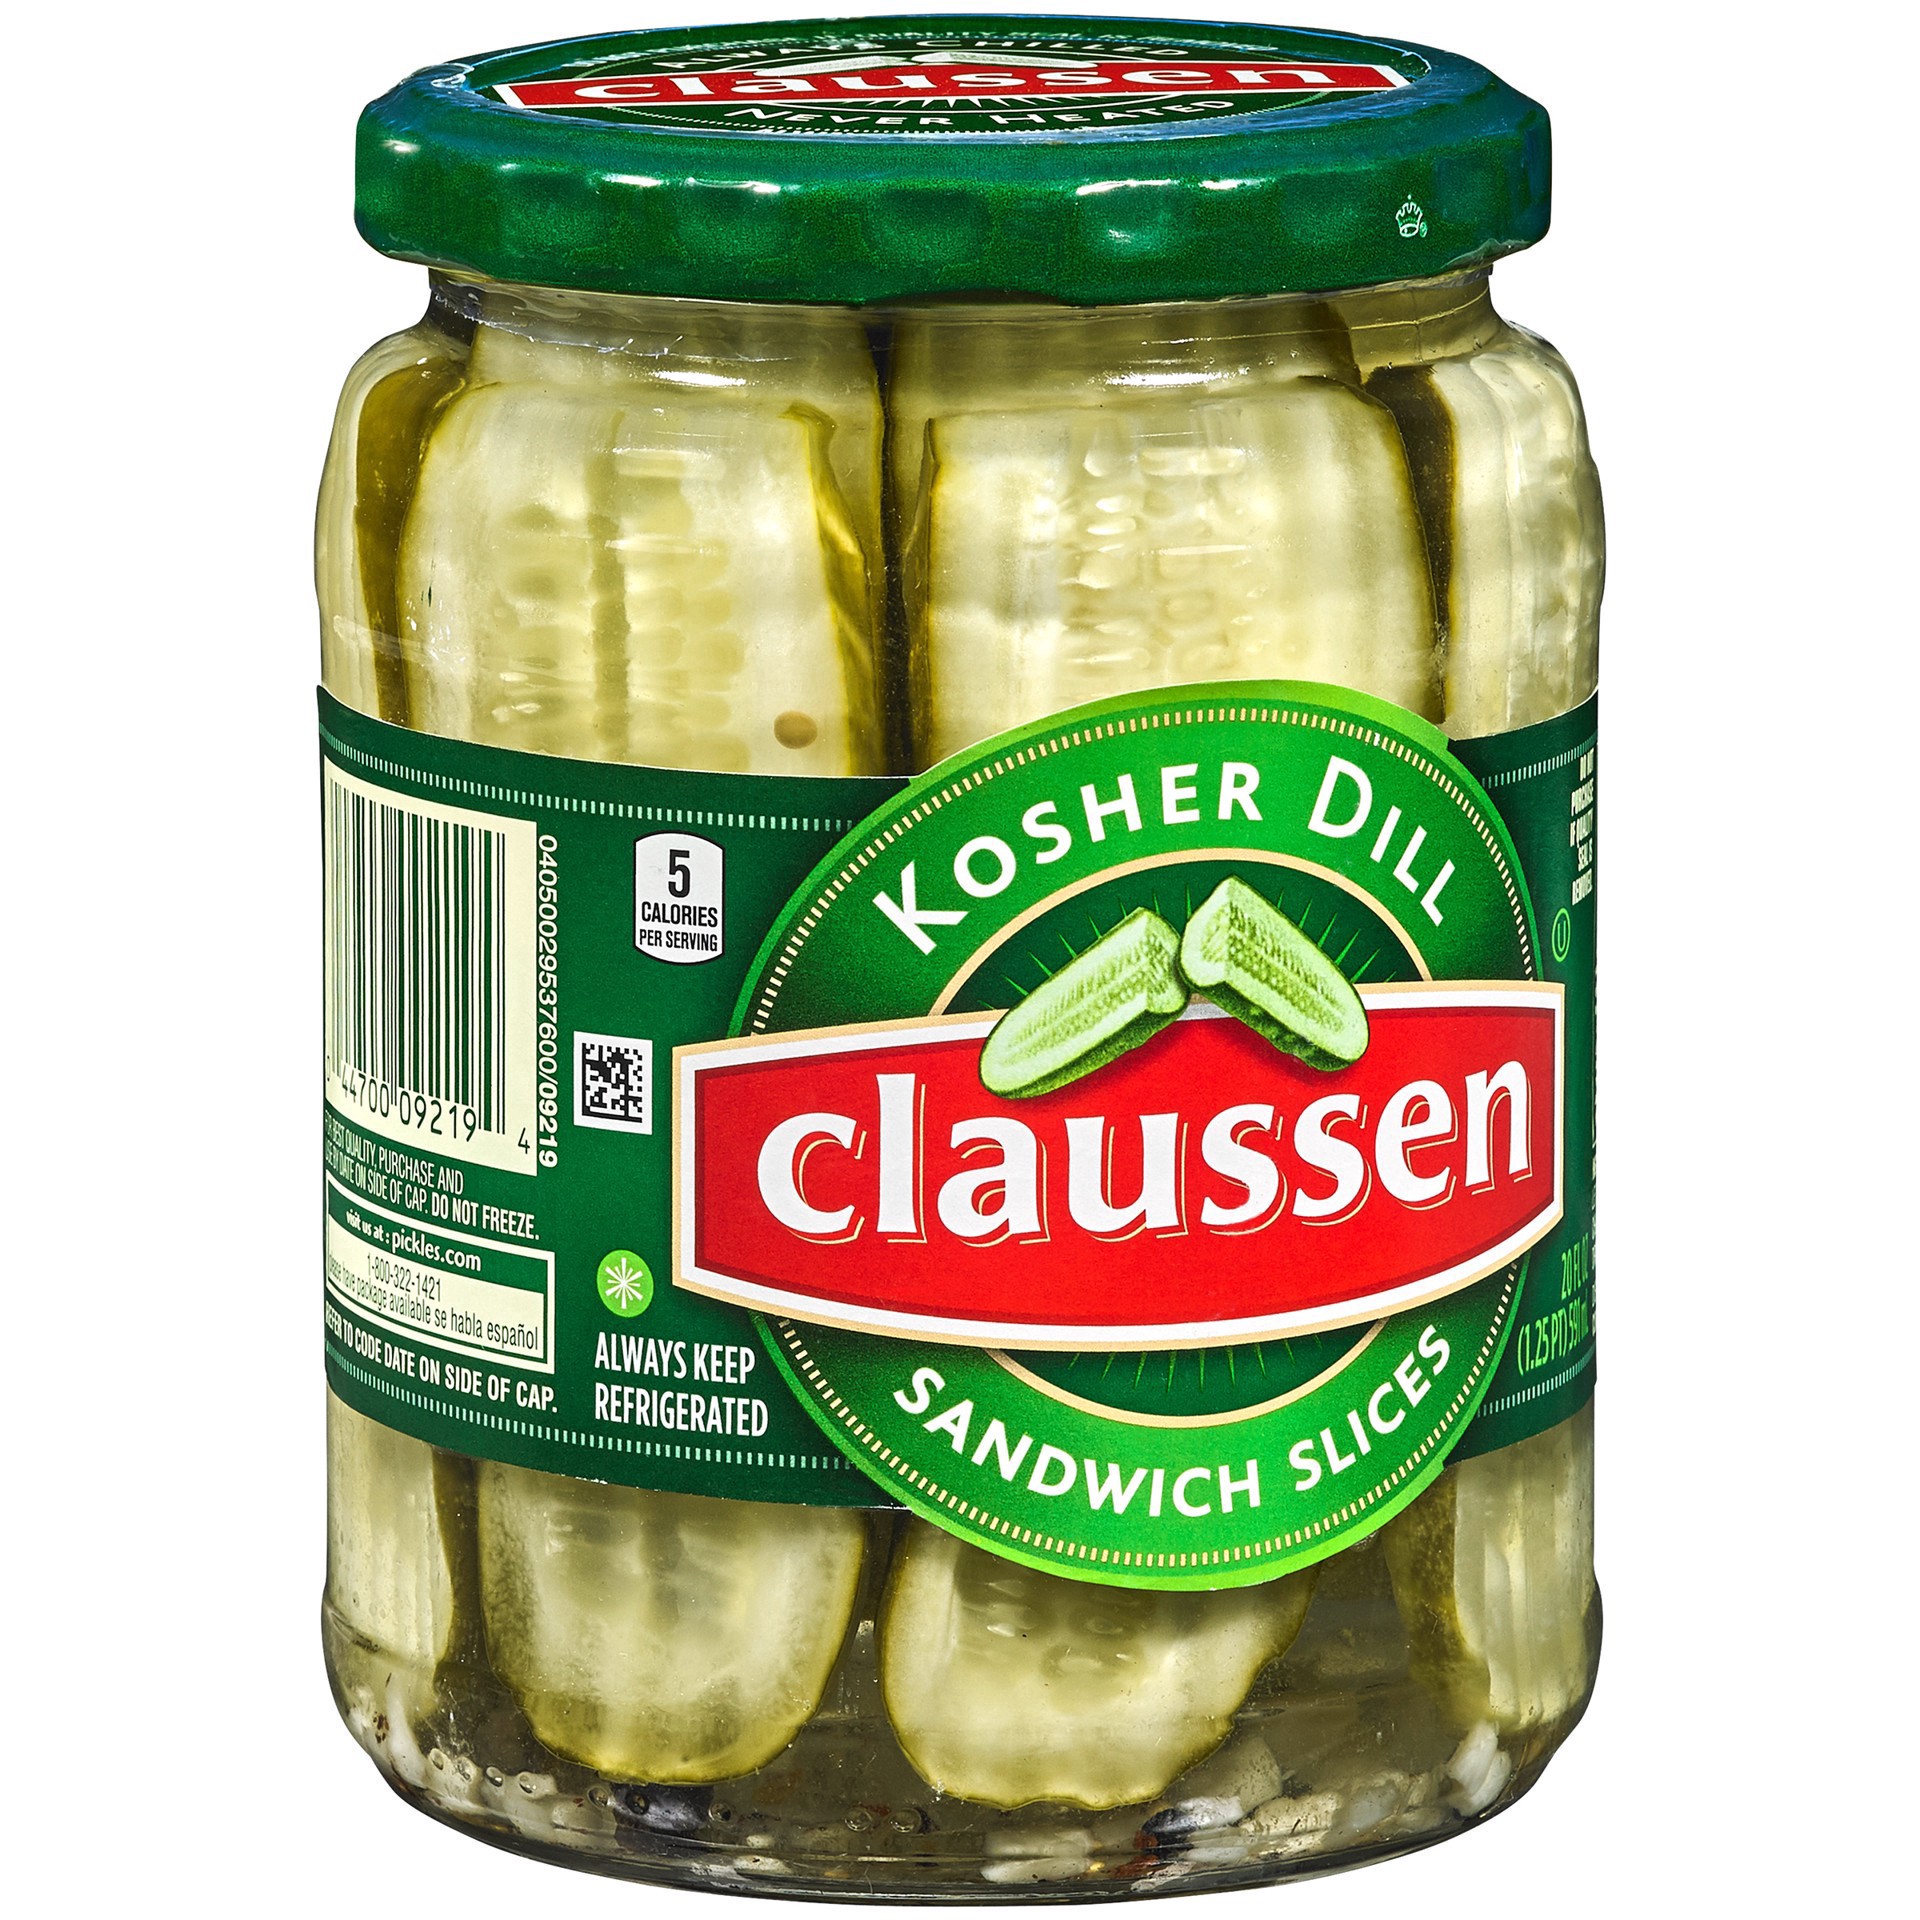 slide 32 of 144, Claussen Kosher Dill Pickle Sandwich Slices, 20 fl. oz. Jar, 20 fl oz